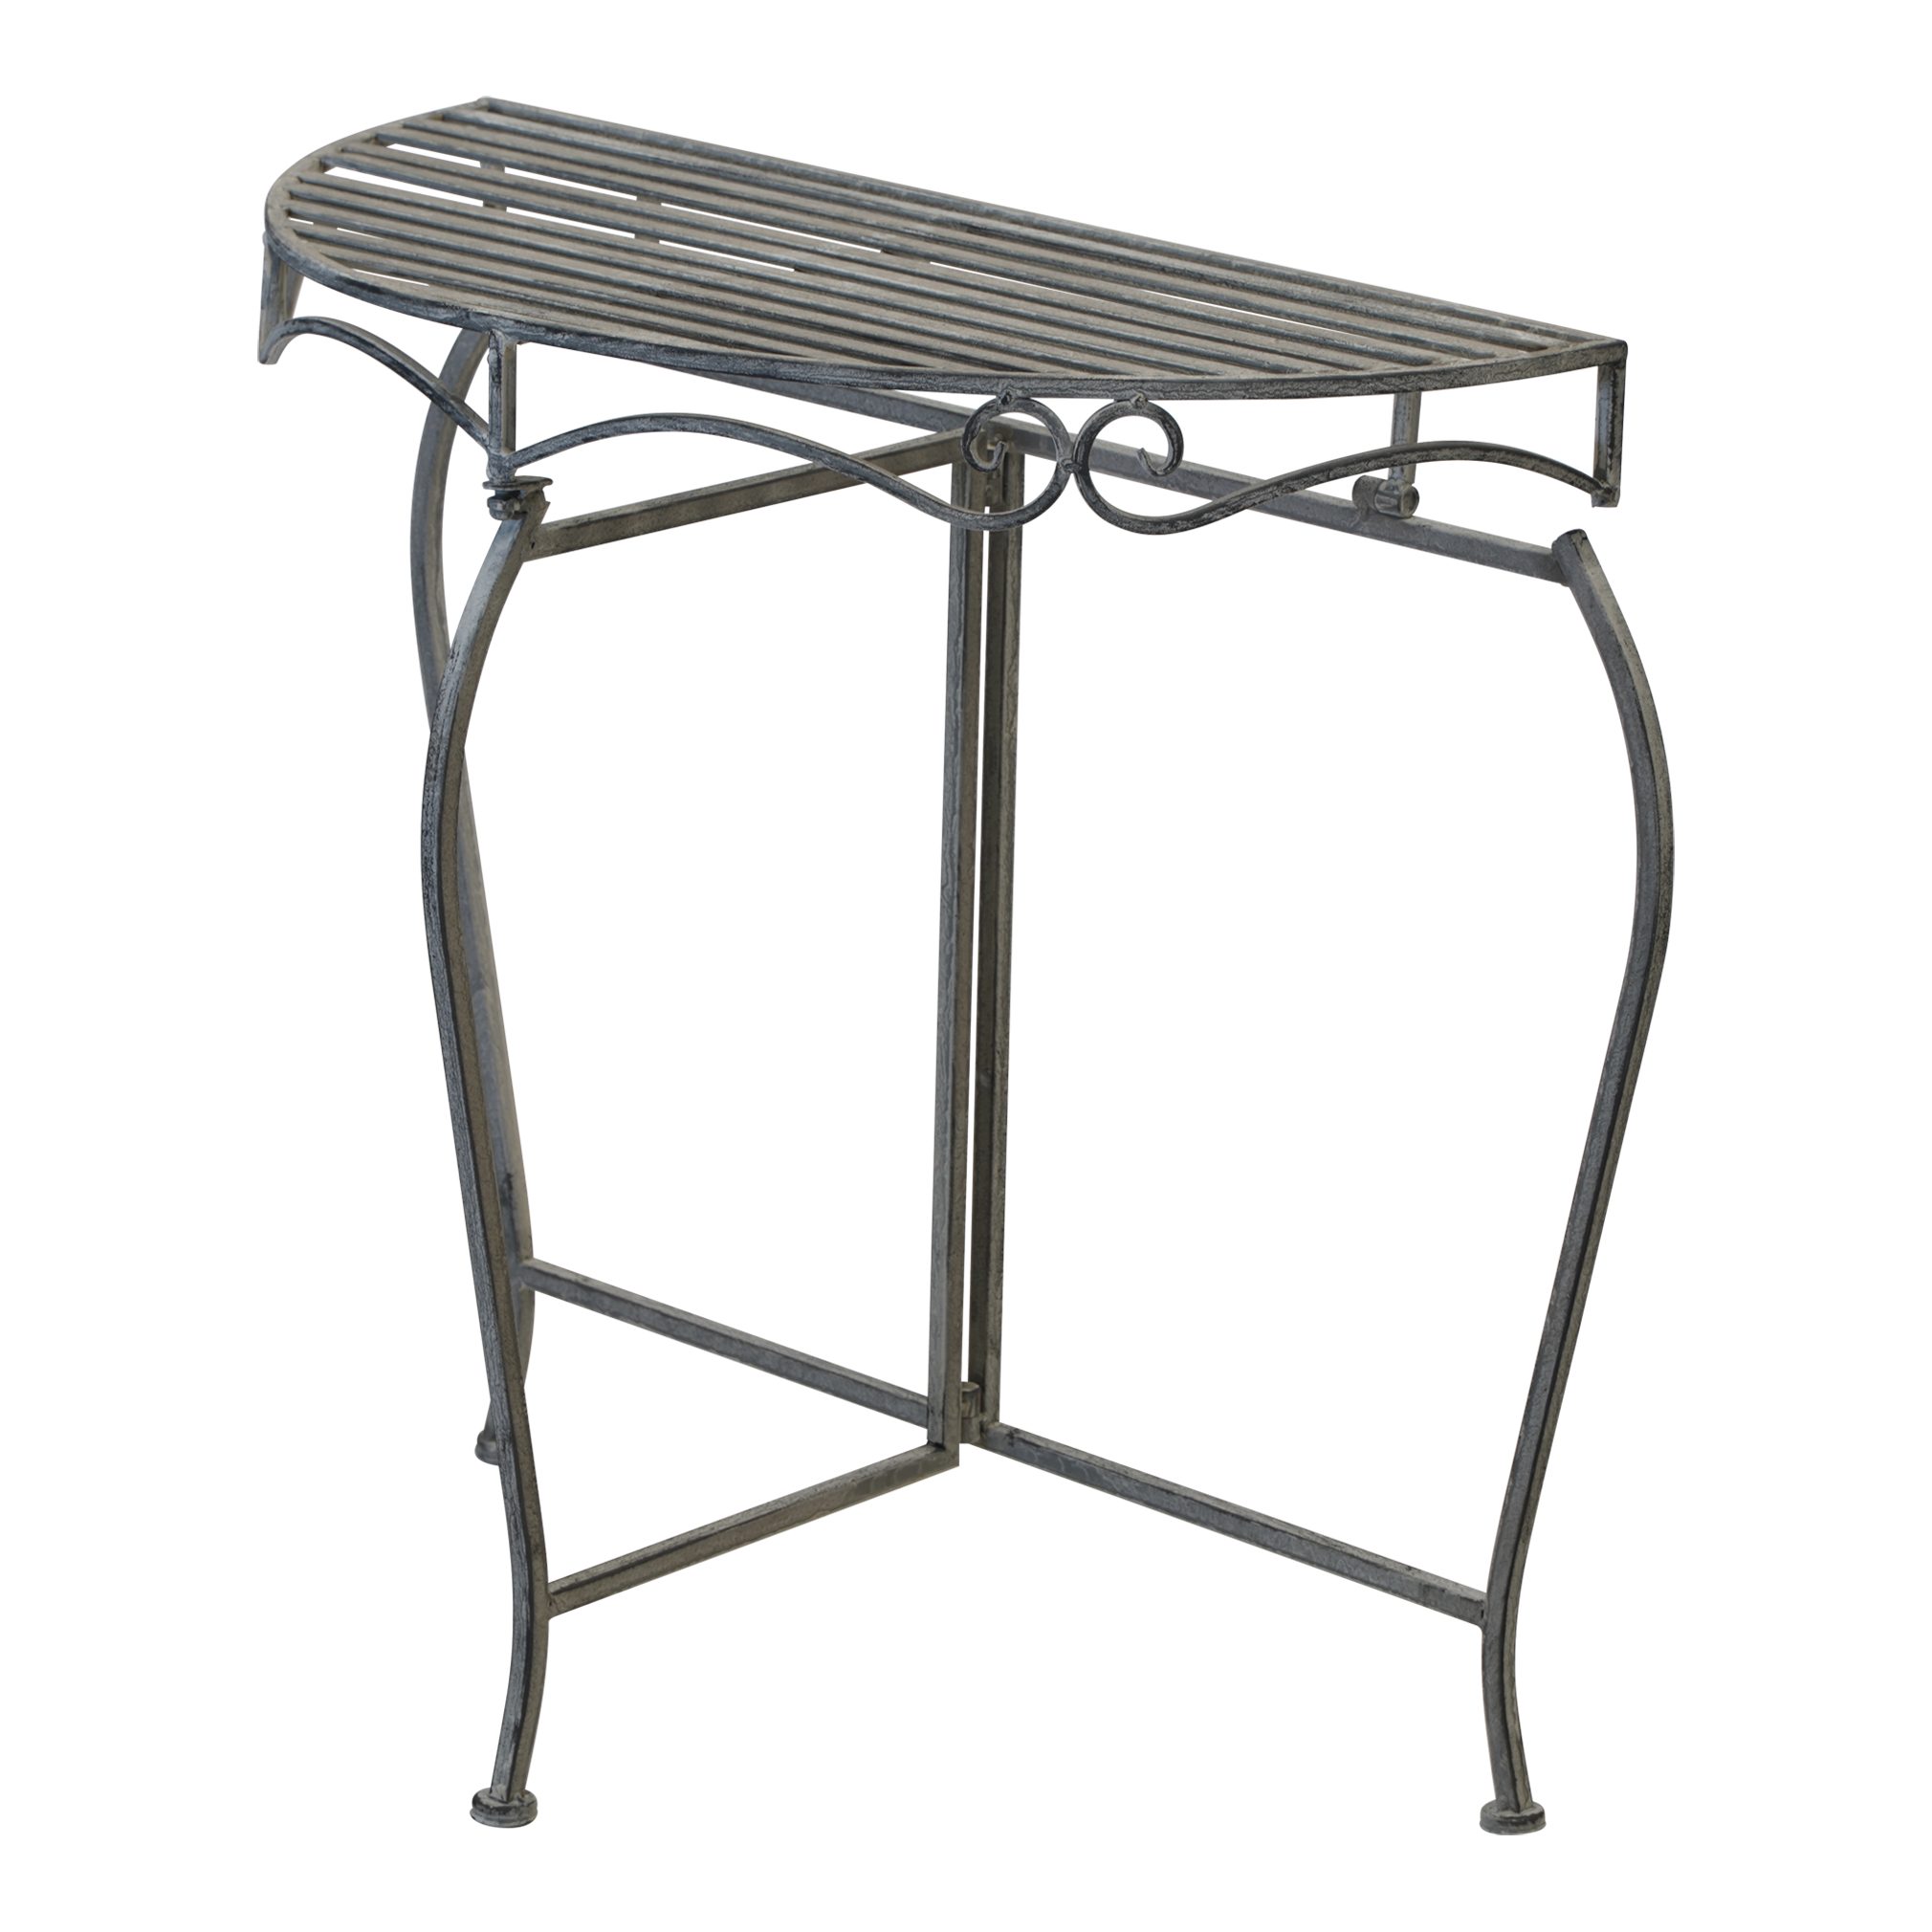 Lesli Living Beistelltisch Beistelltisch Tisch halbrund Metall grau Gartentisch 75x37x74cm